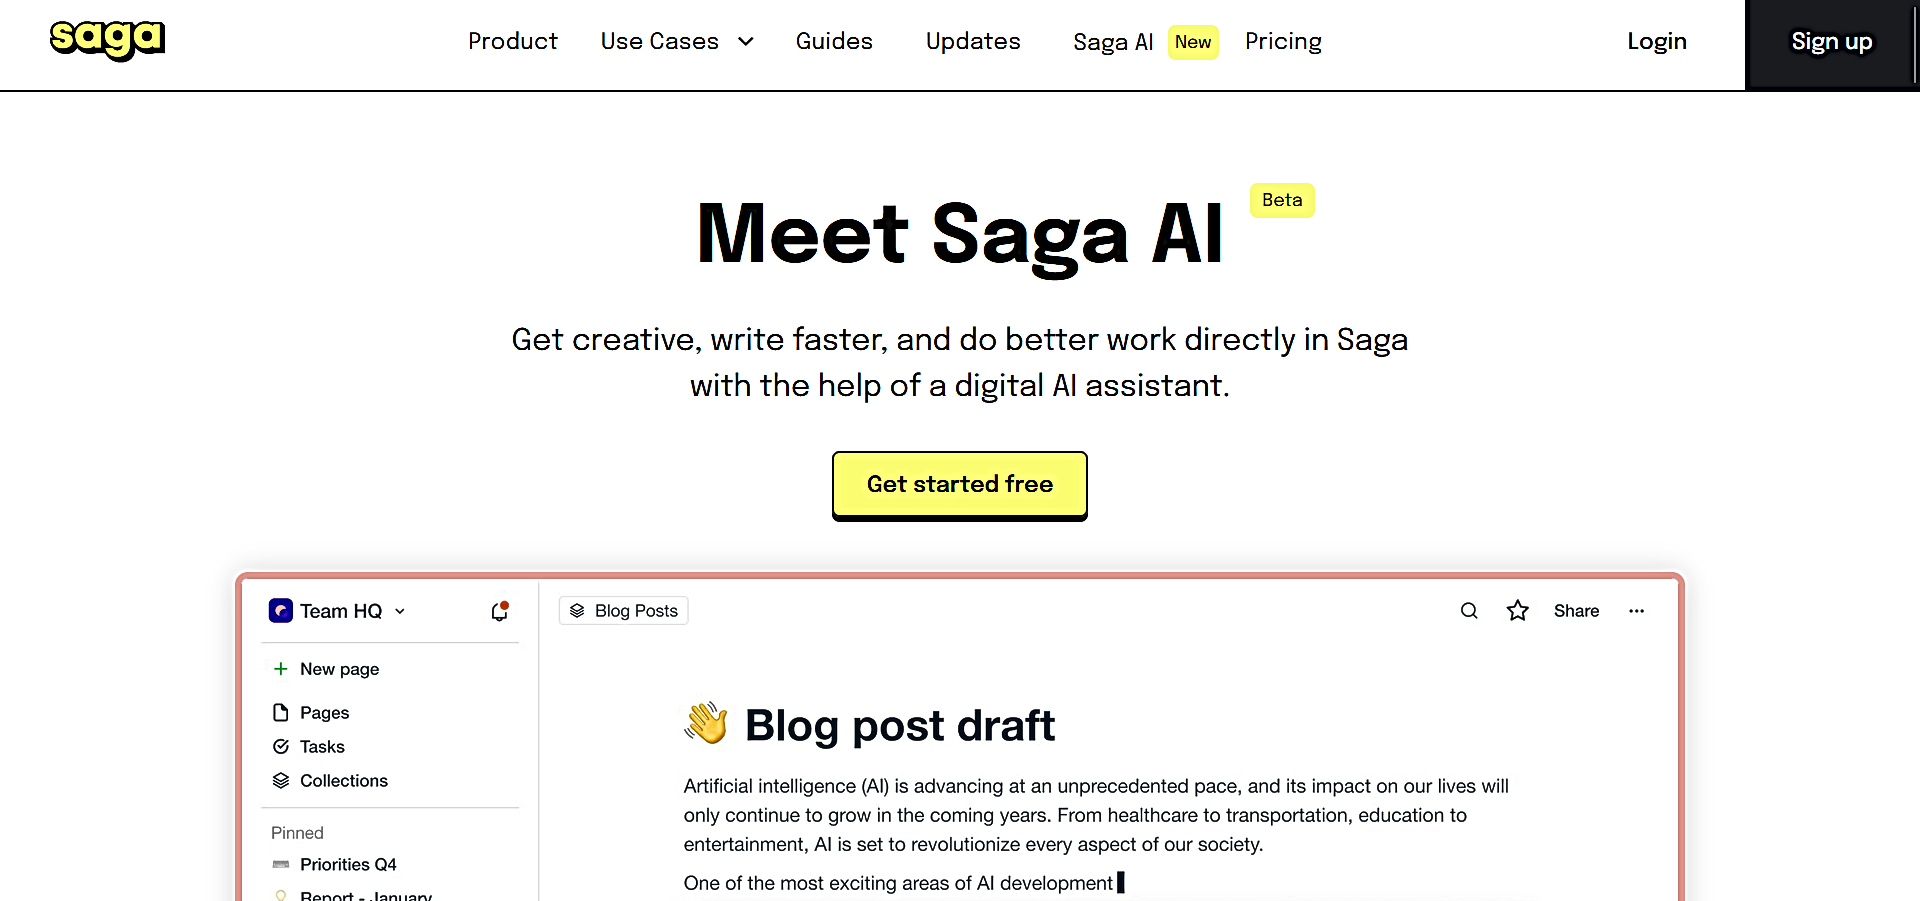 Saga AI featured